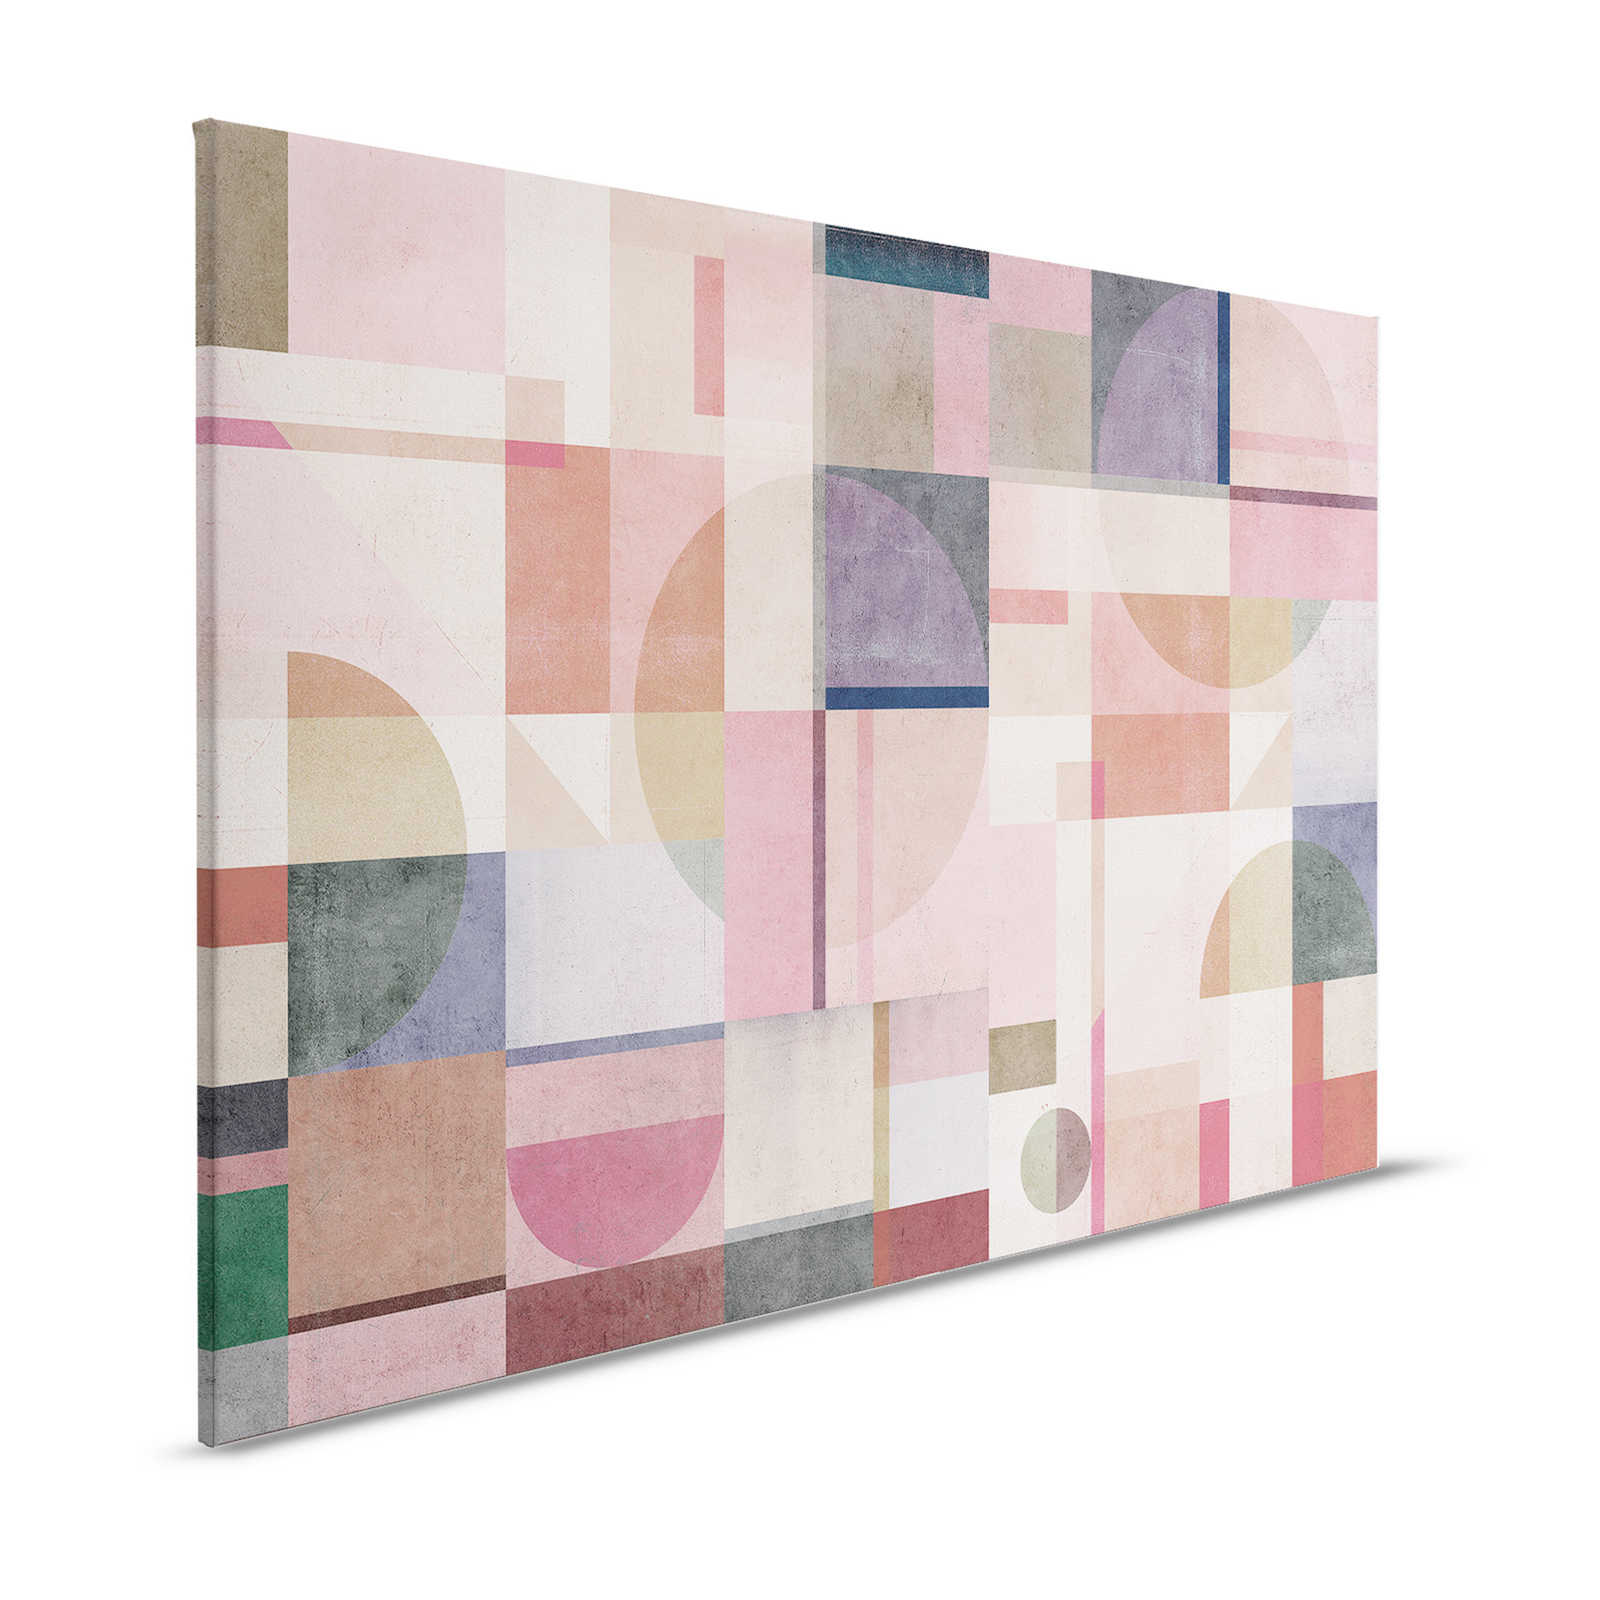 Piazza 2 - Pintura sobre lienzo con aspecto de hormigón rosa y verde con patrón gráfico - 1,20 m x 0,80 m
